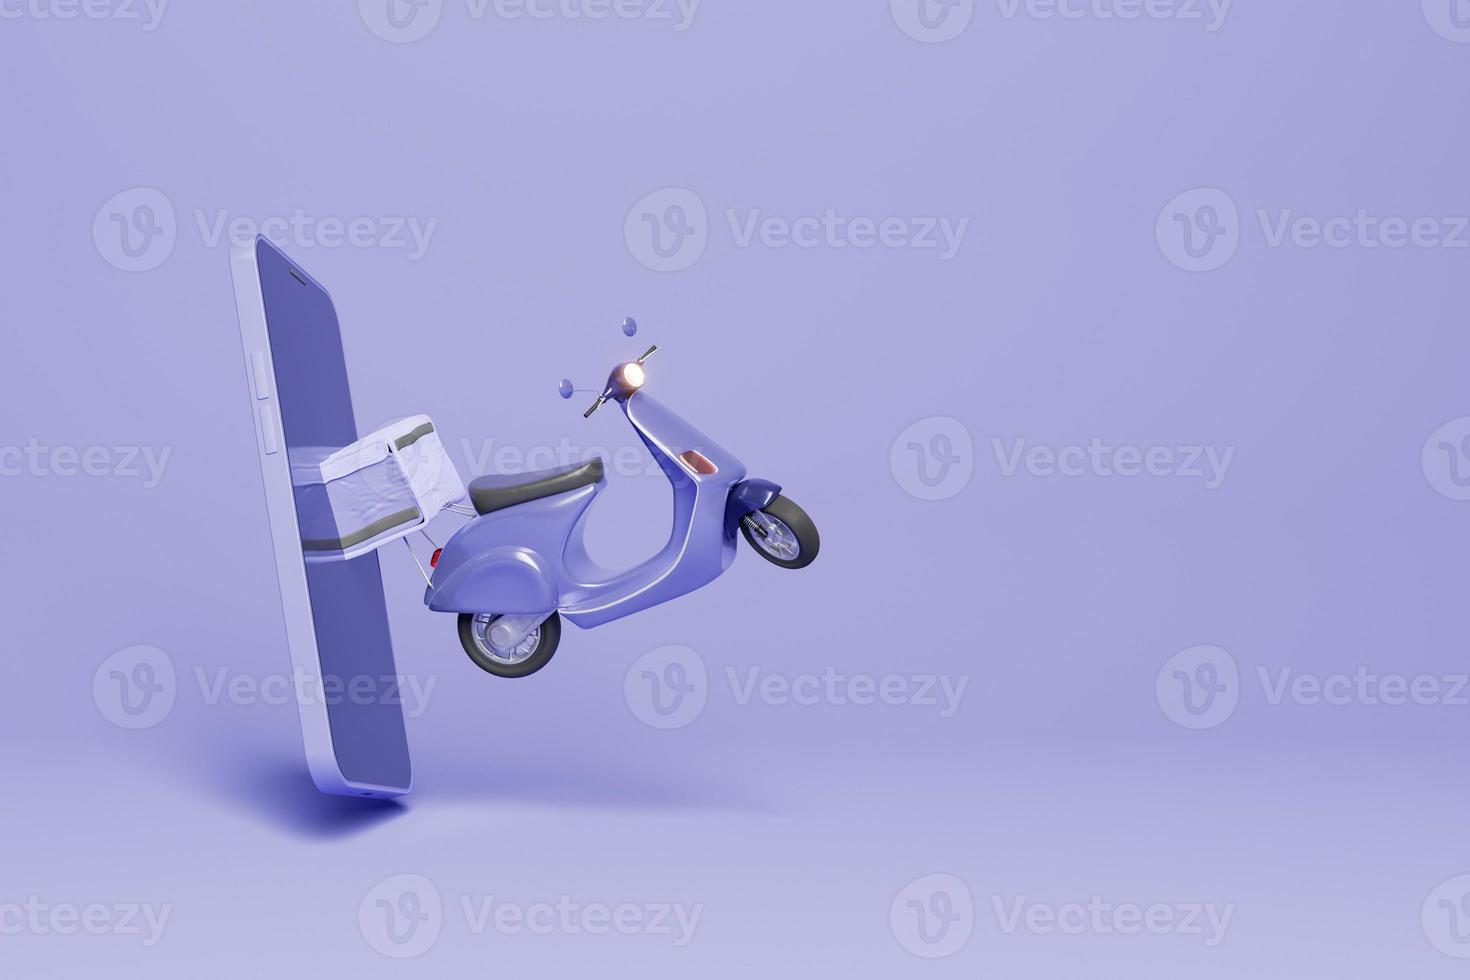 scooter saindo da tela de um celular foto